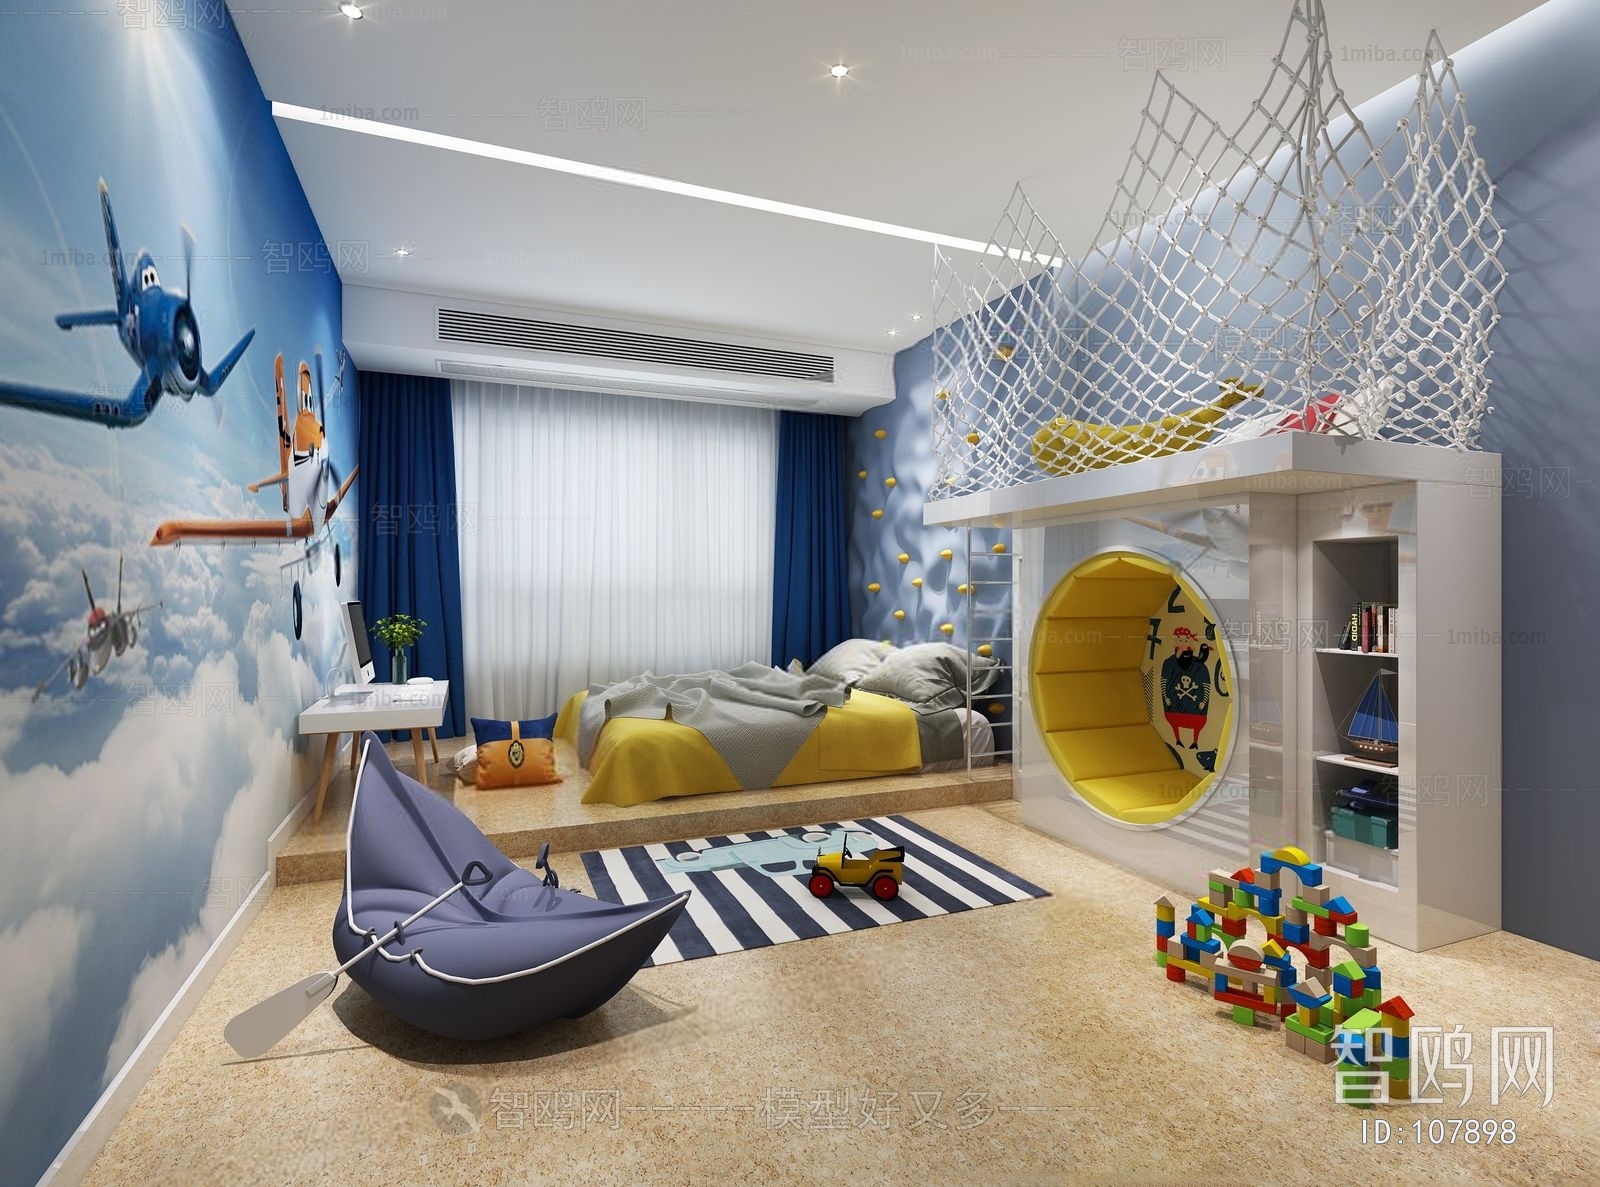 Mediterranean Style Children's Room